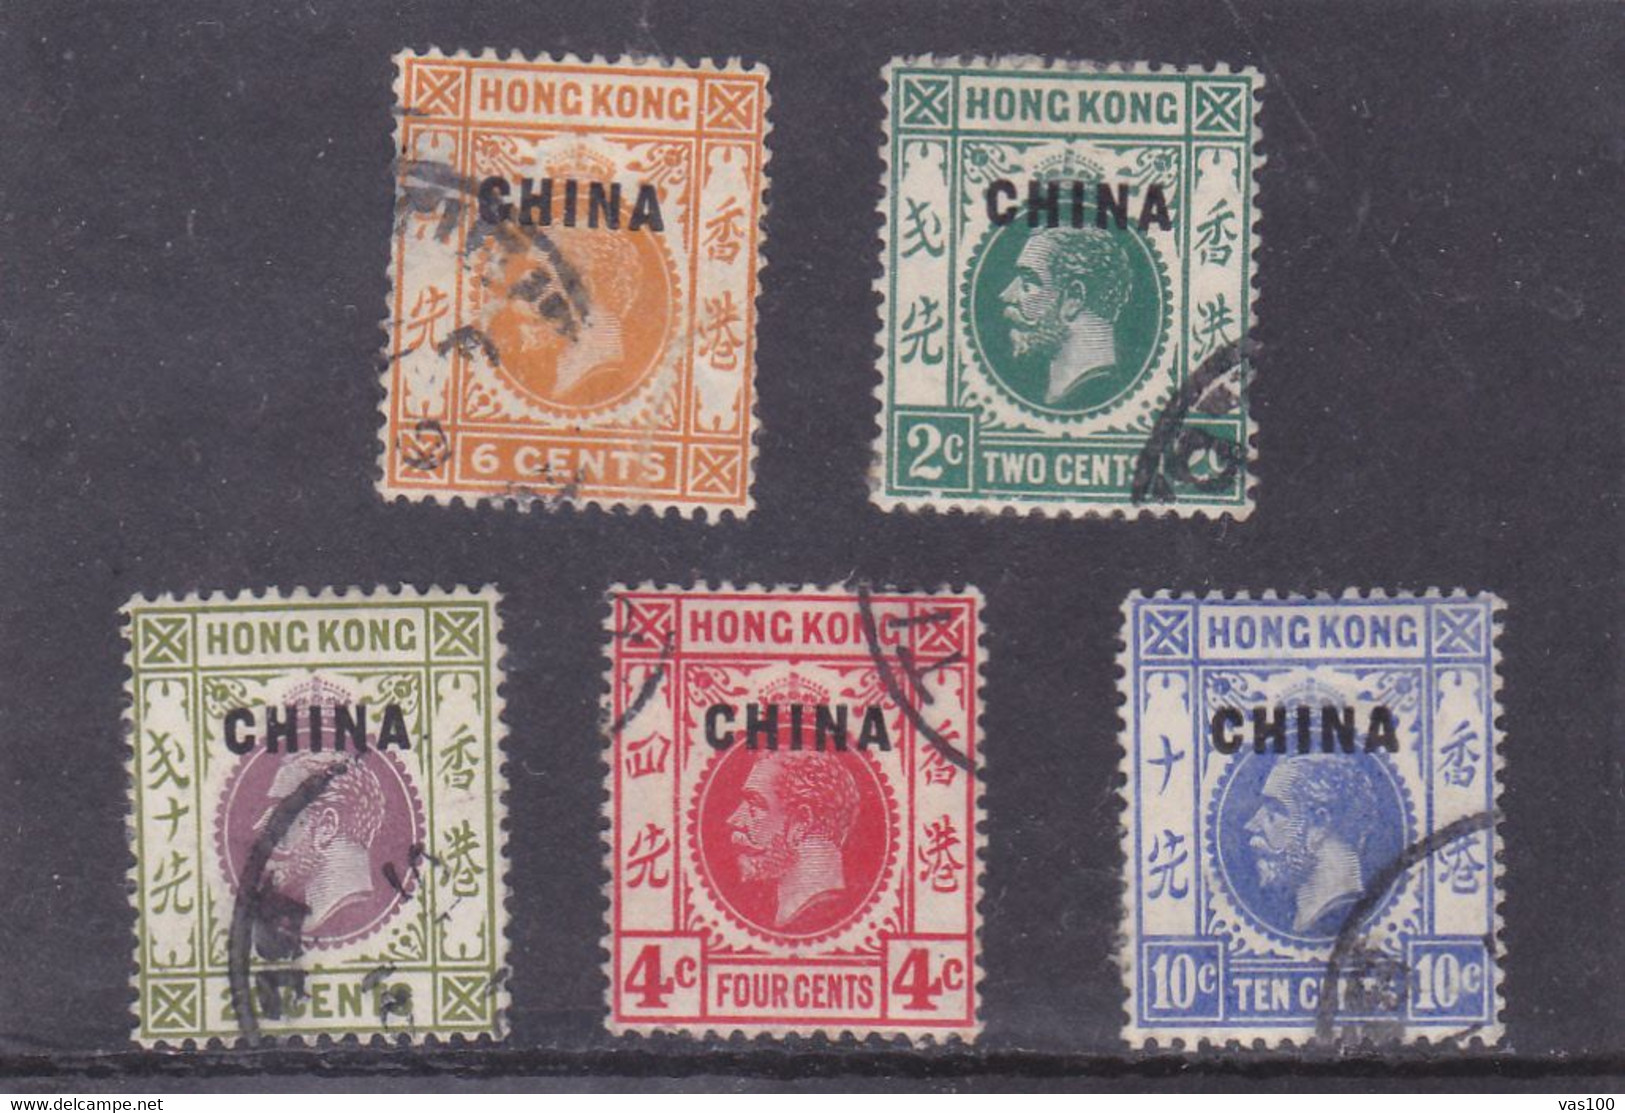 BRITISH P.O.s IN CHINA 1917-21 'CHINA' 5 STAMPS USED - Gebruikt